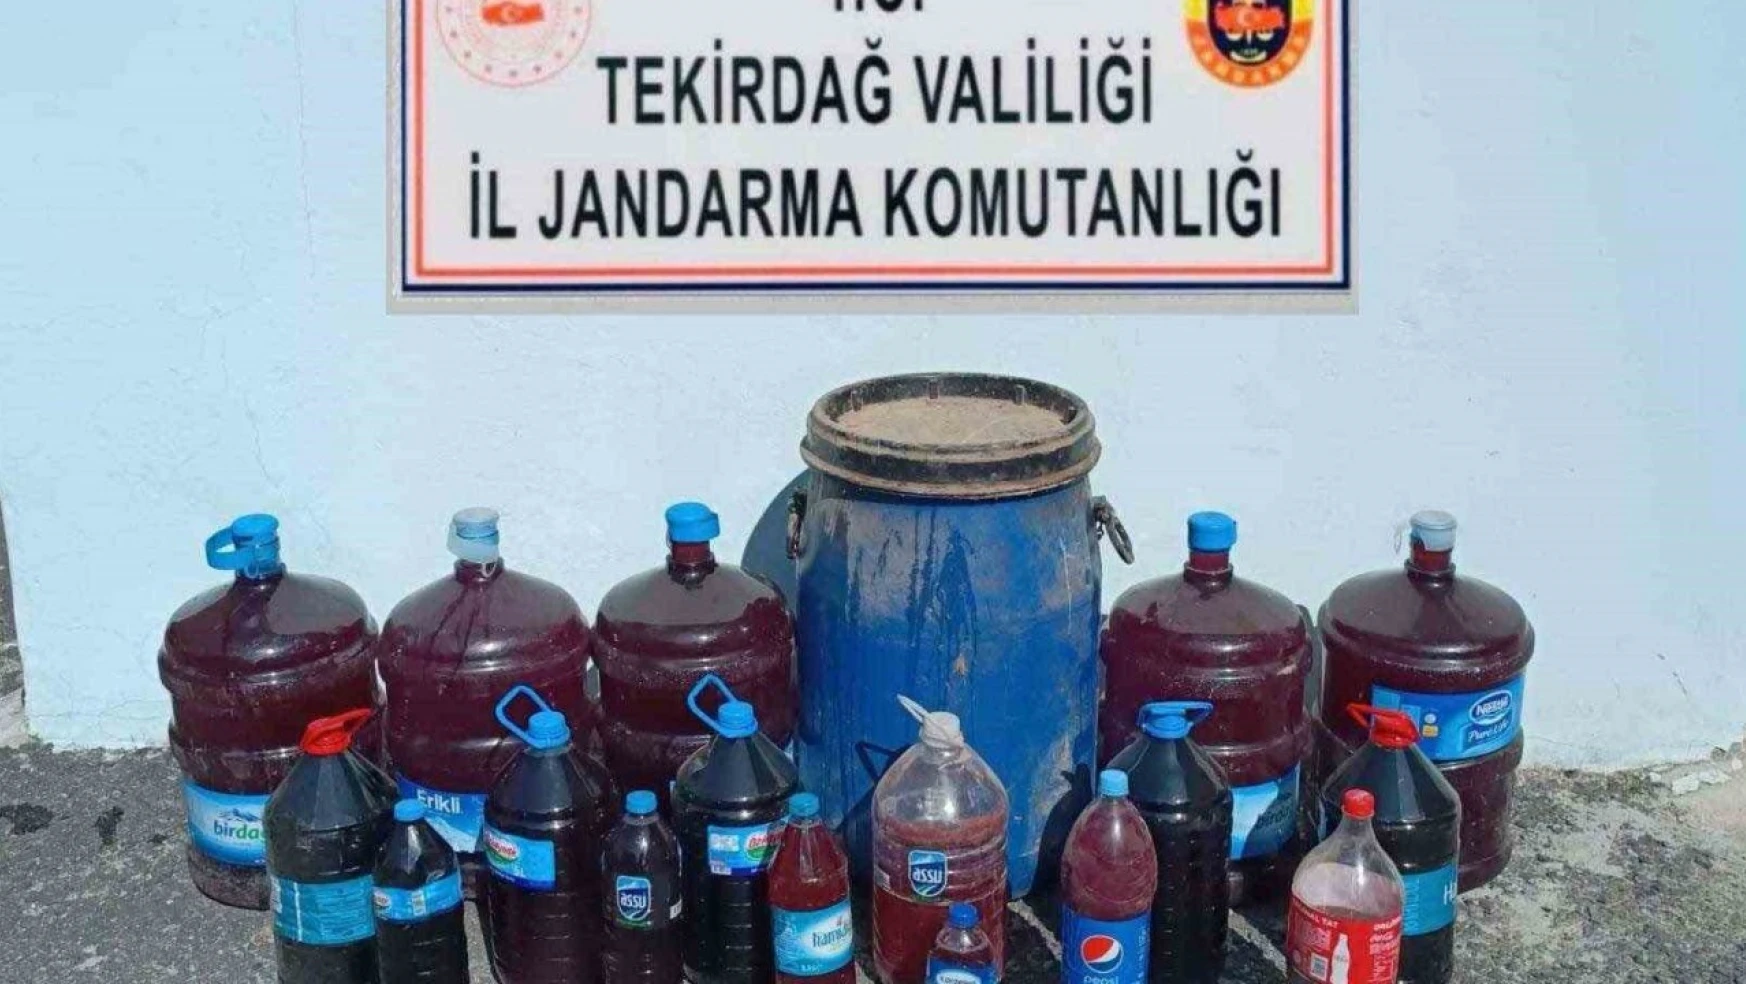 Malkara'da 200 litre kaçak içki ele geçirildi